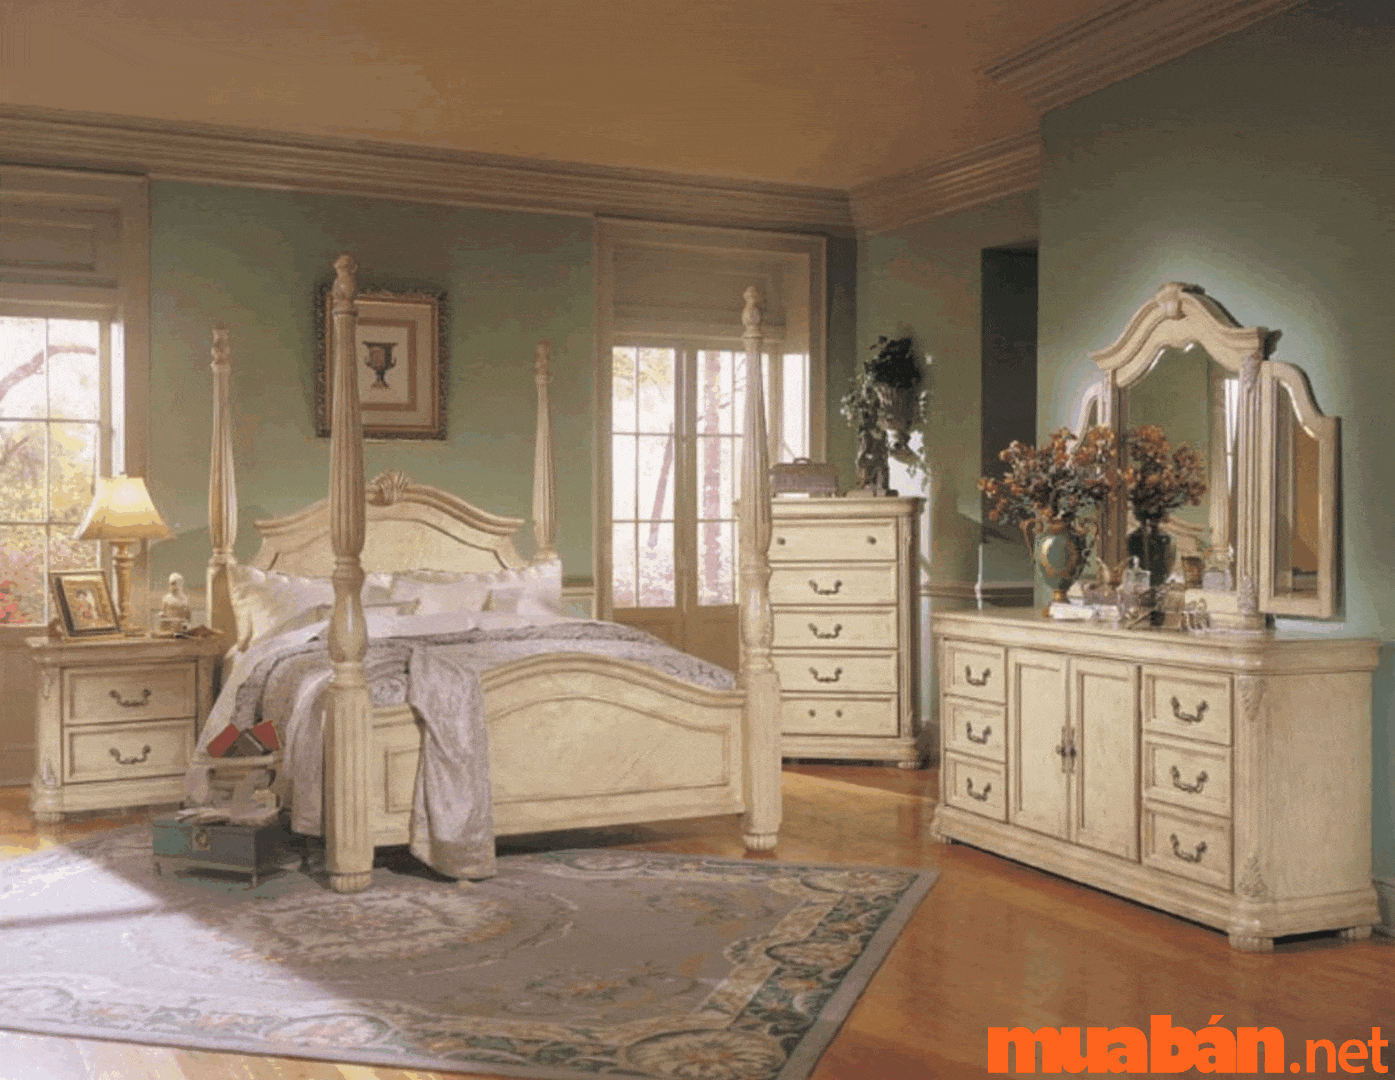 Phong cách vintage cũng rất được đánh gái cao khi decor phòng ngủ chill cho nữ